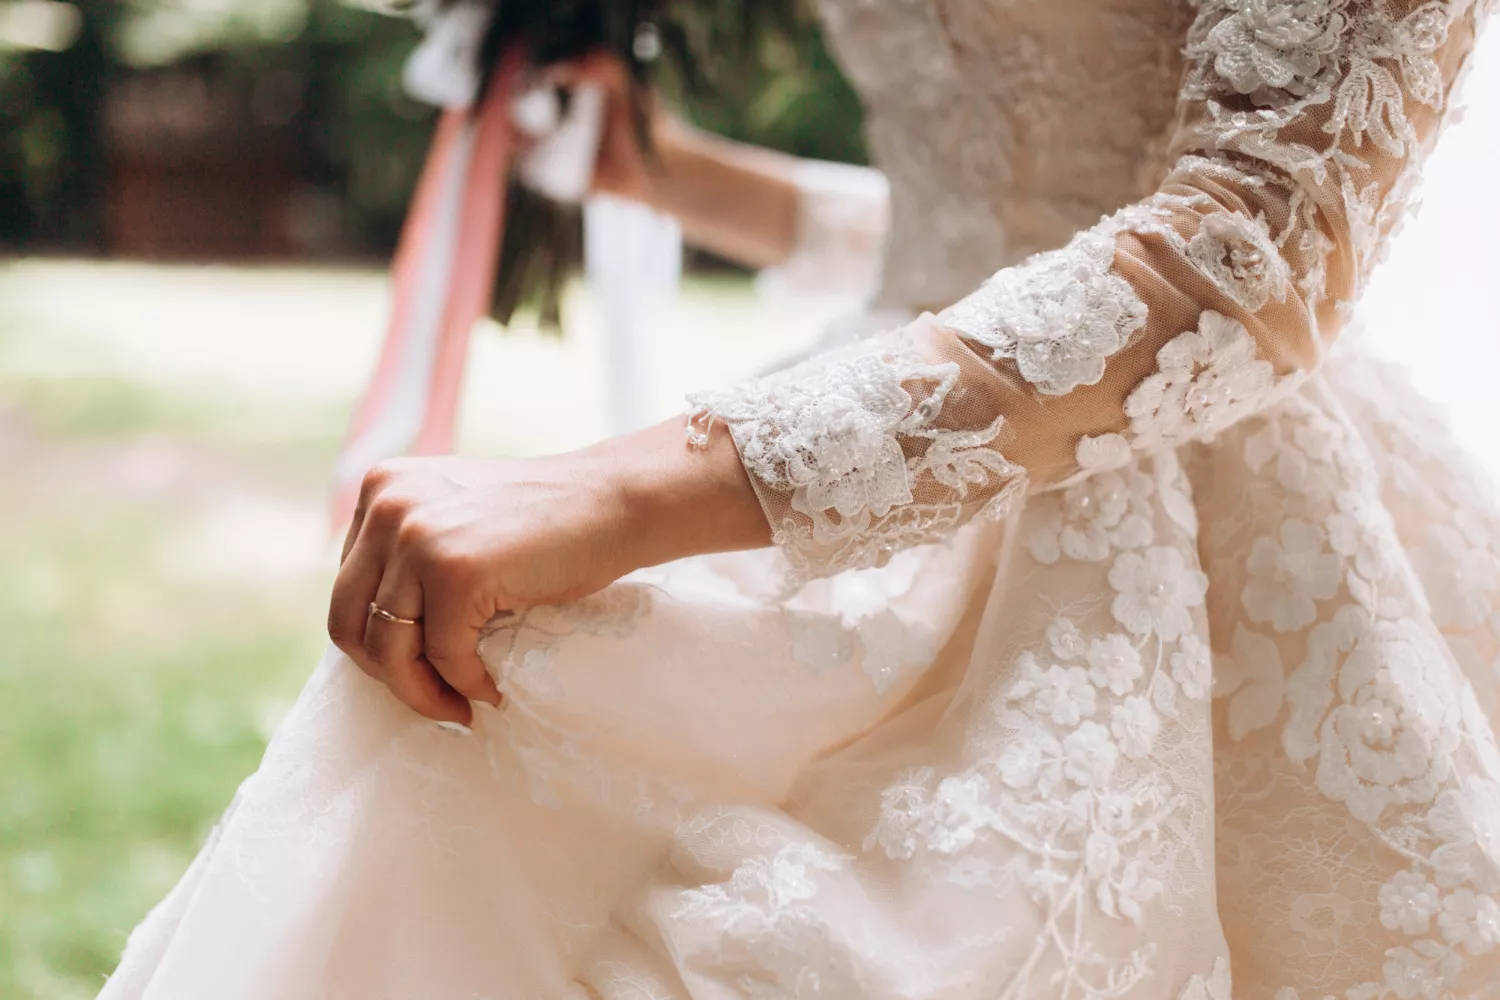 蕾絲婚紗樣式設計精美且工藝獨特，為新娘增添優雅魅力。